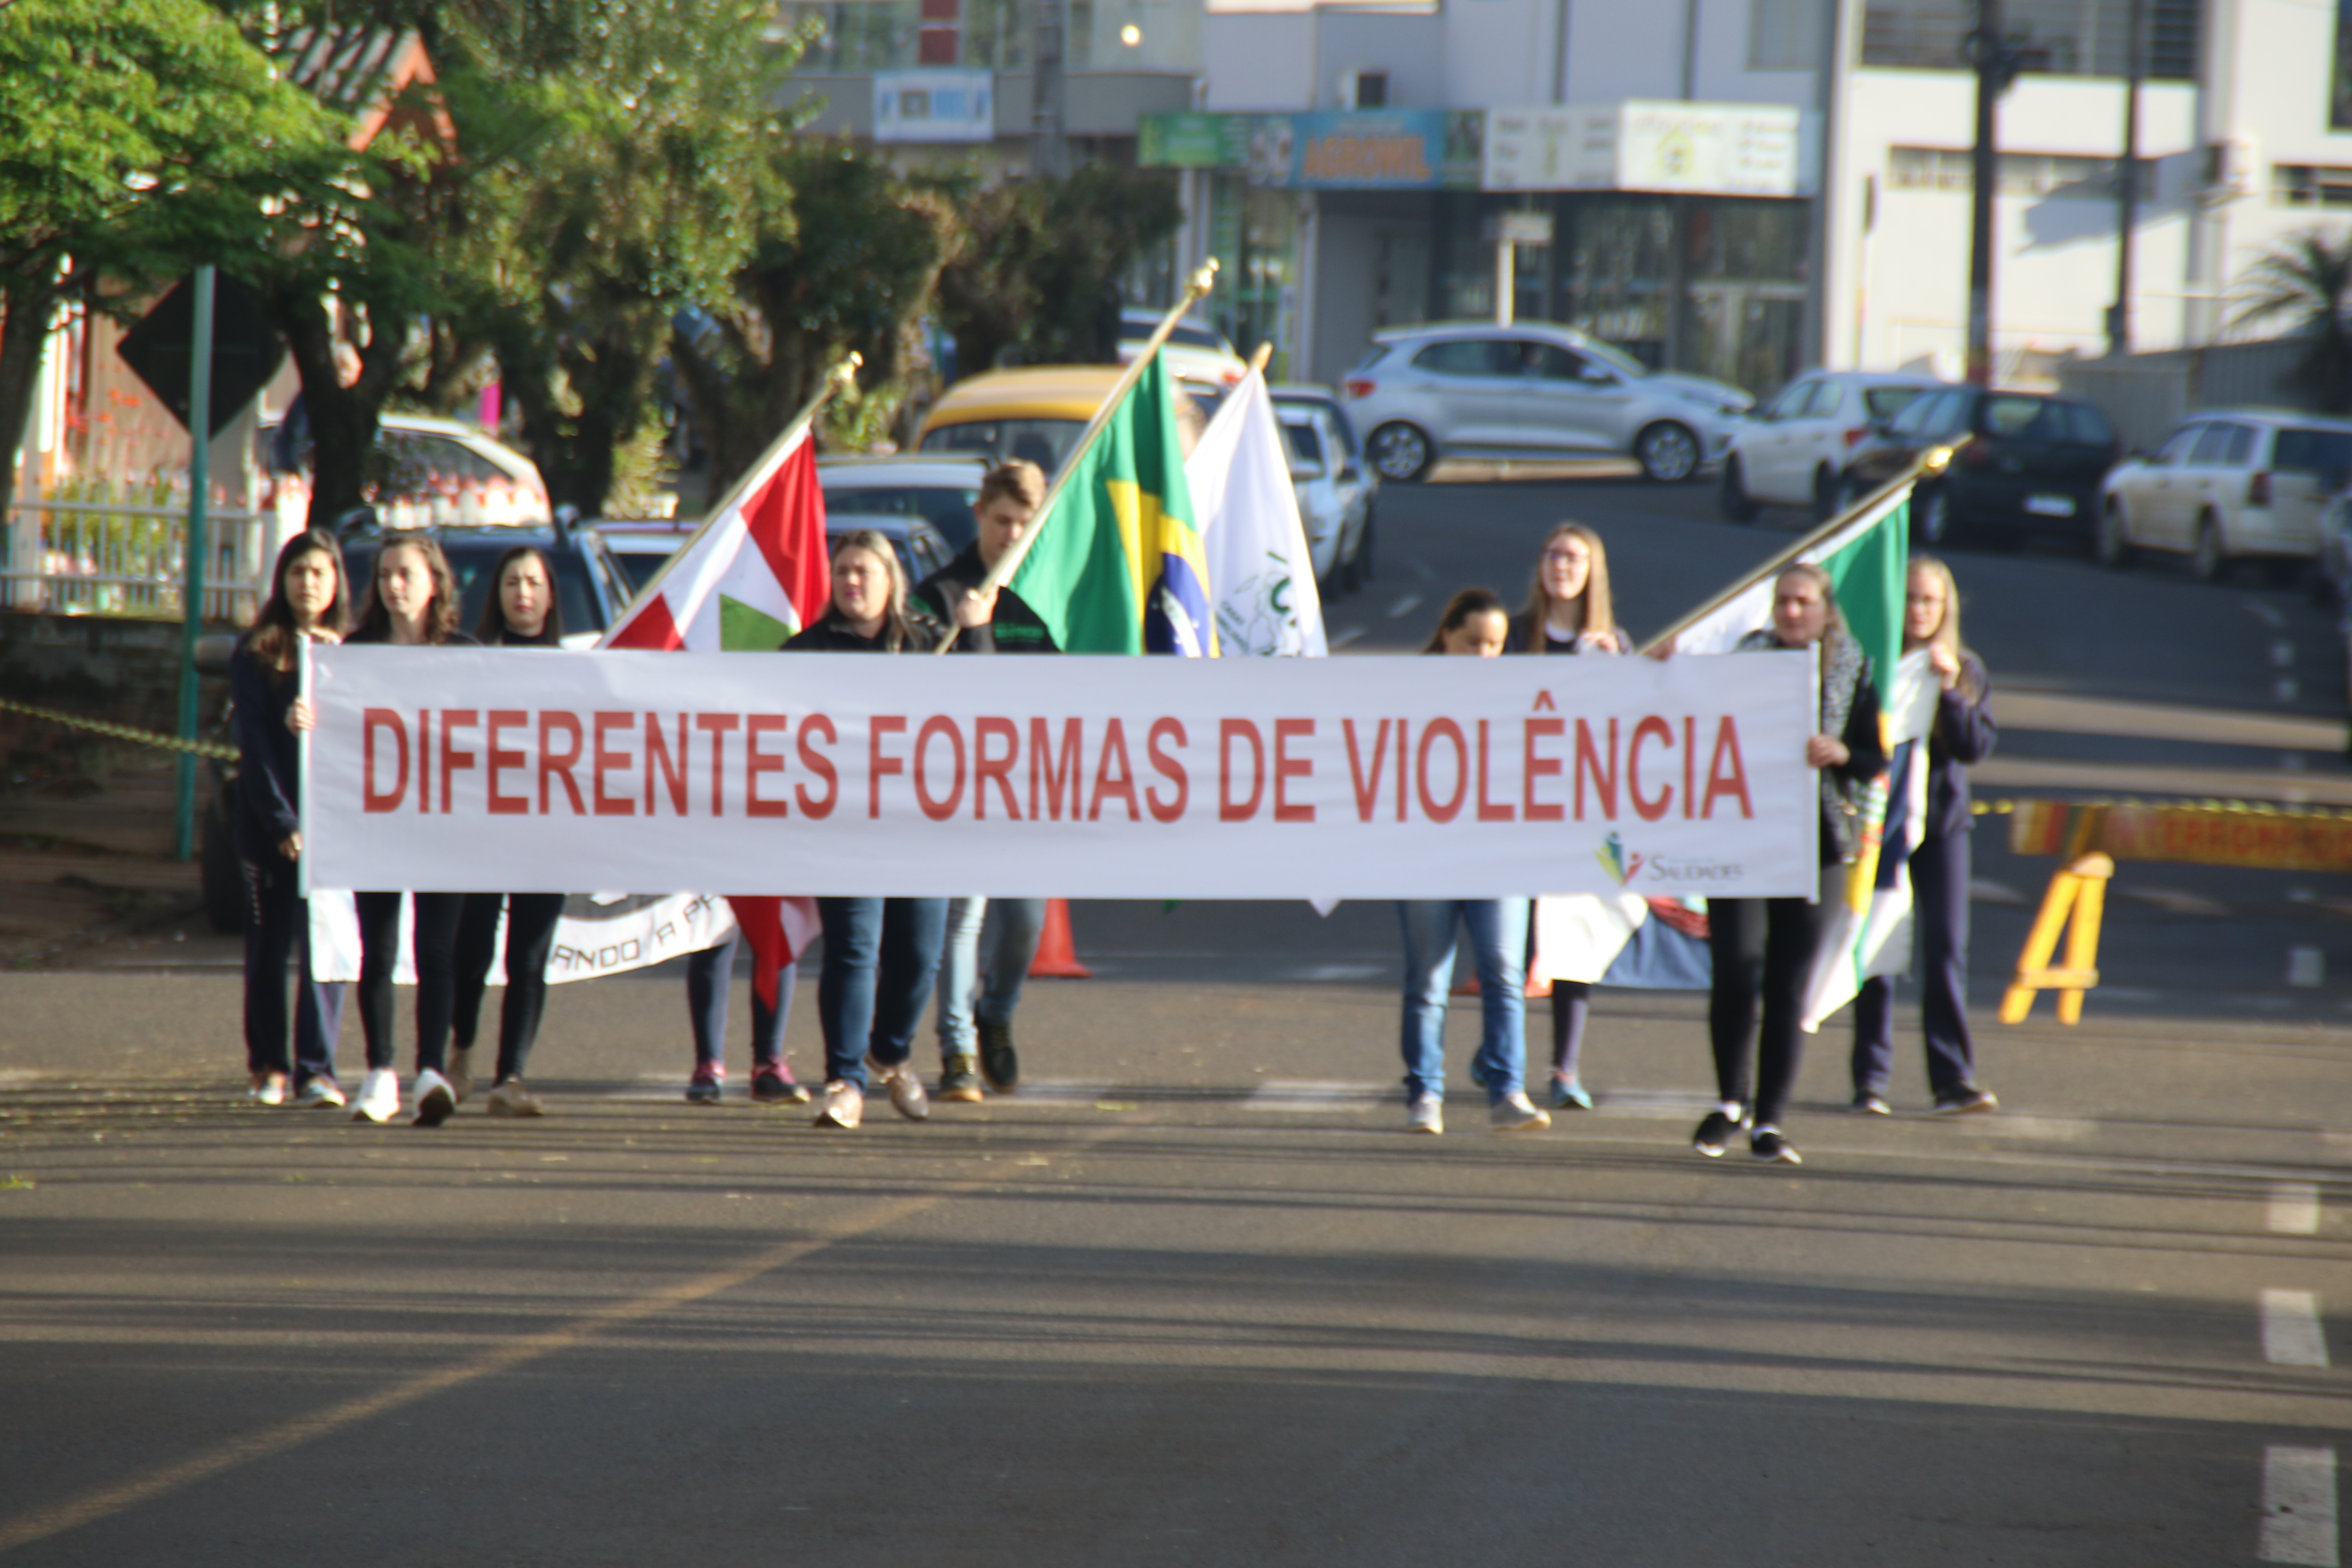 Caminhada cívica abordou as diferentes formas de violência